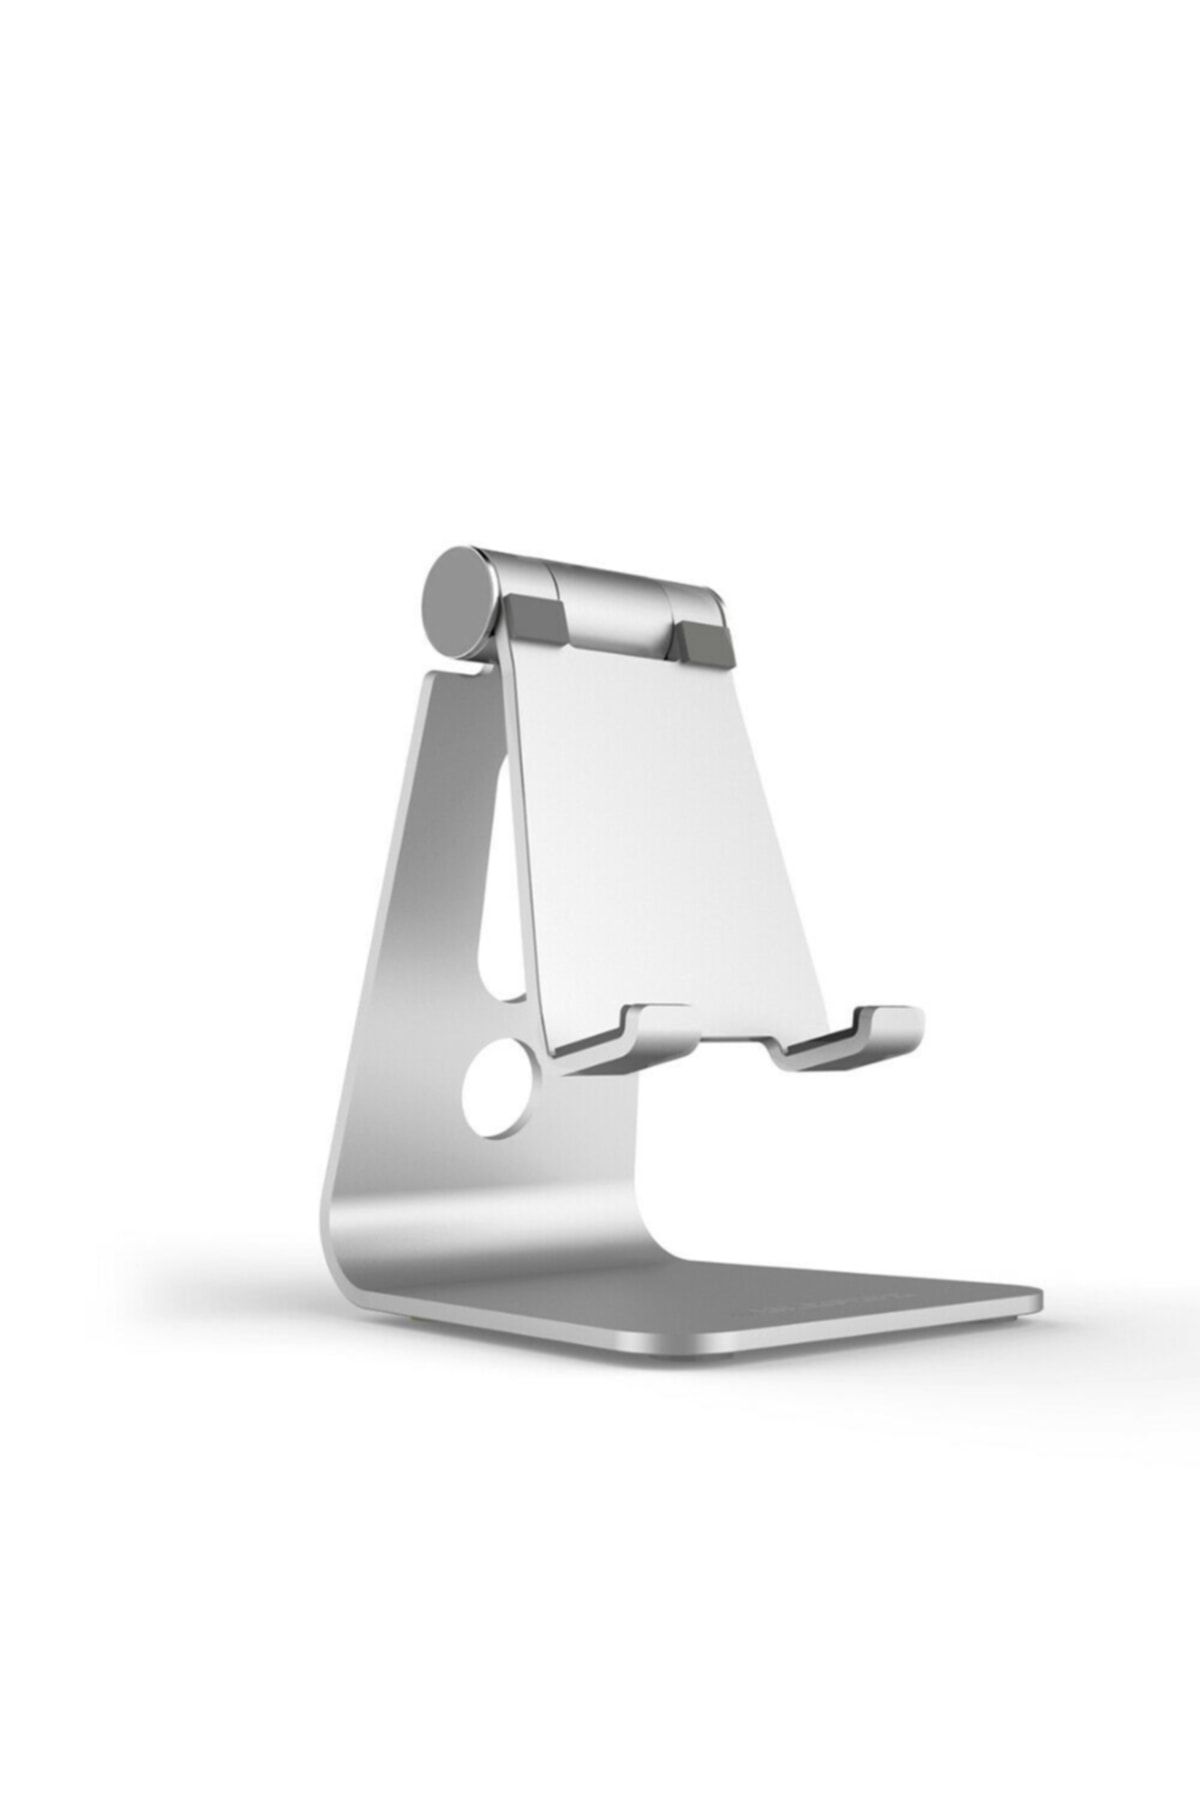 Techmaster Metal Telefon Tablet Stand Masaüstü Ayarlanabilir Dock Standı Gri